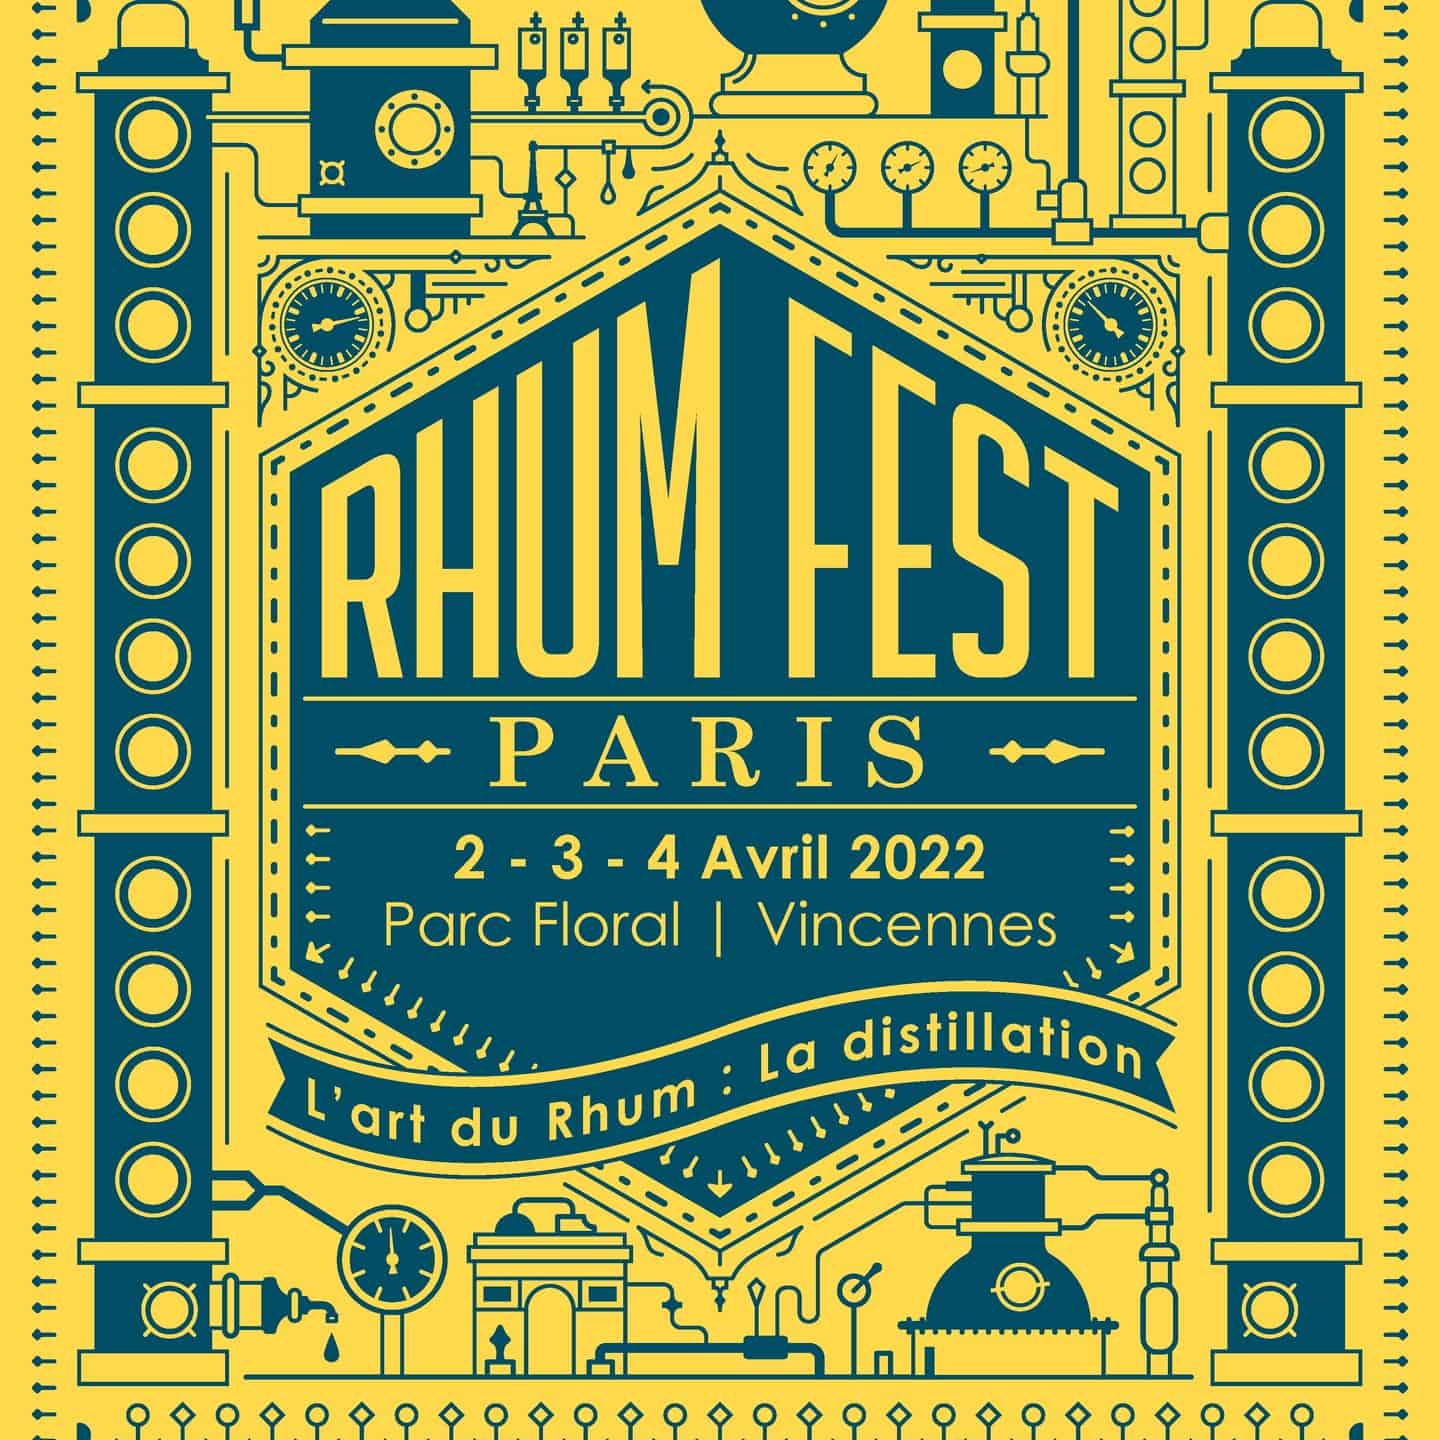 Rhum Fest Paris : de retour les 2-3-4 avril 2022